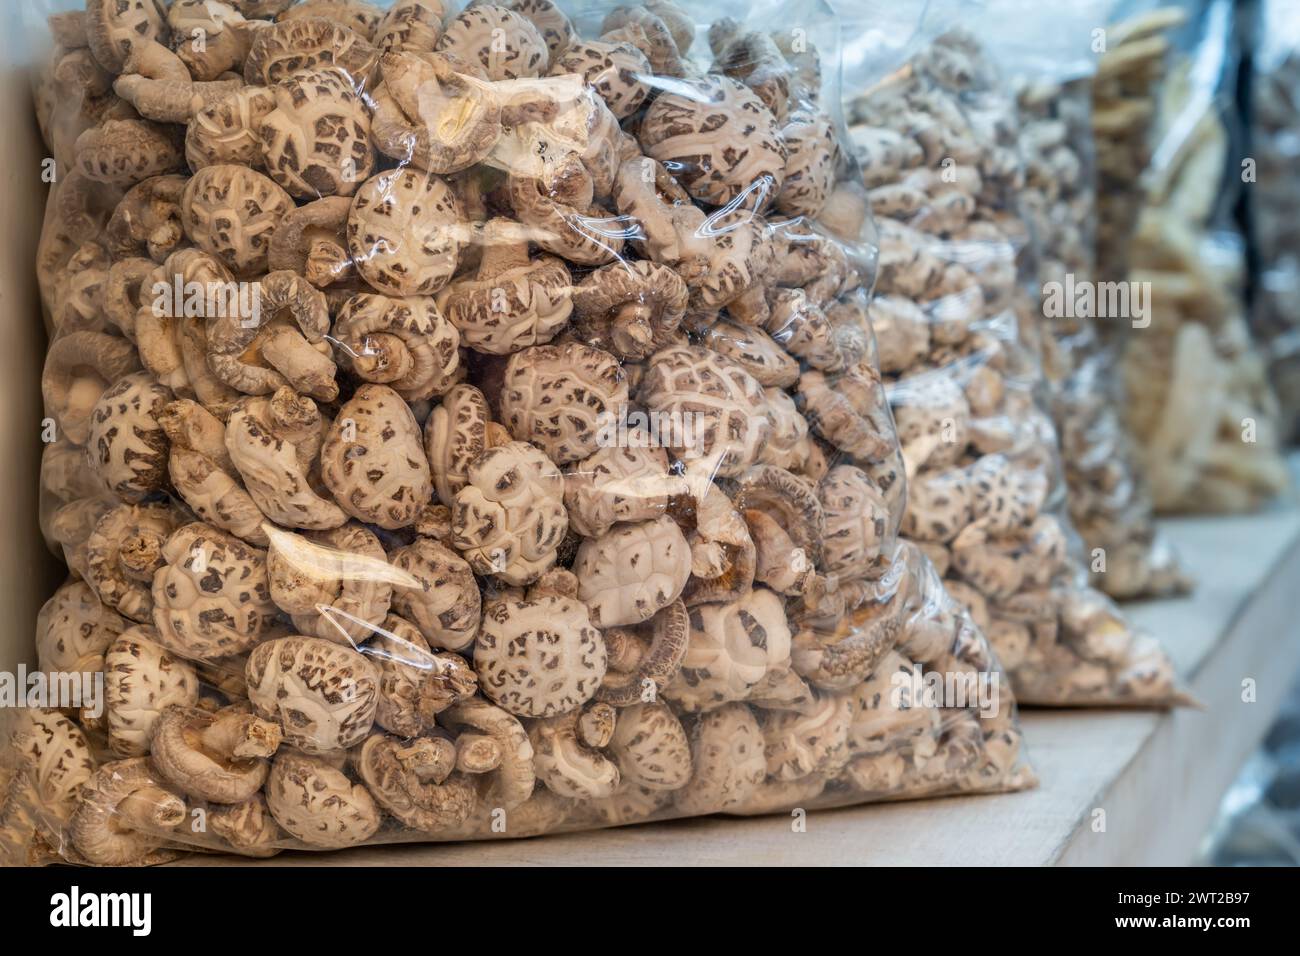 In sacchetti di plastica trasparenti, funghi shiitake in vendita sul mercato. Lo shiitake è un fungo commestibile originario dell'Asia orientale che viene coltivato e consu Foto Stock